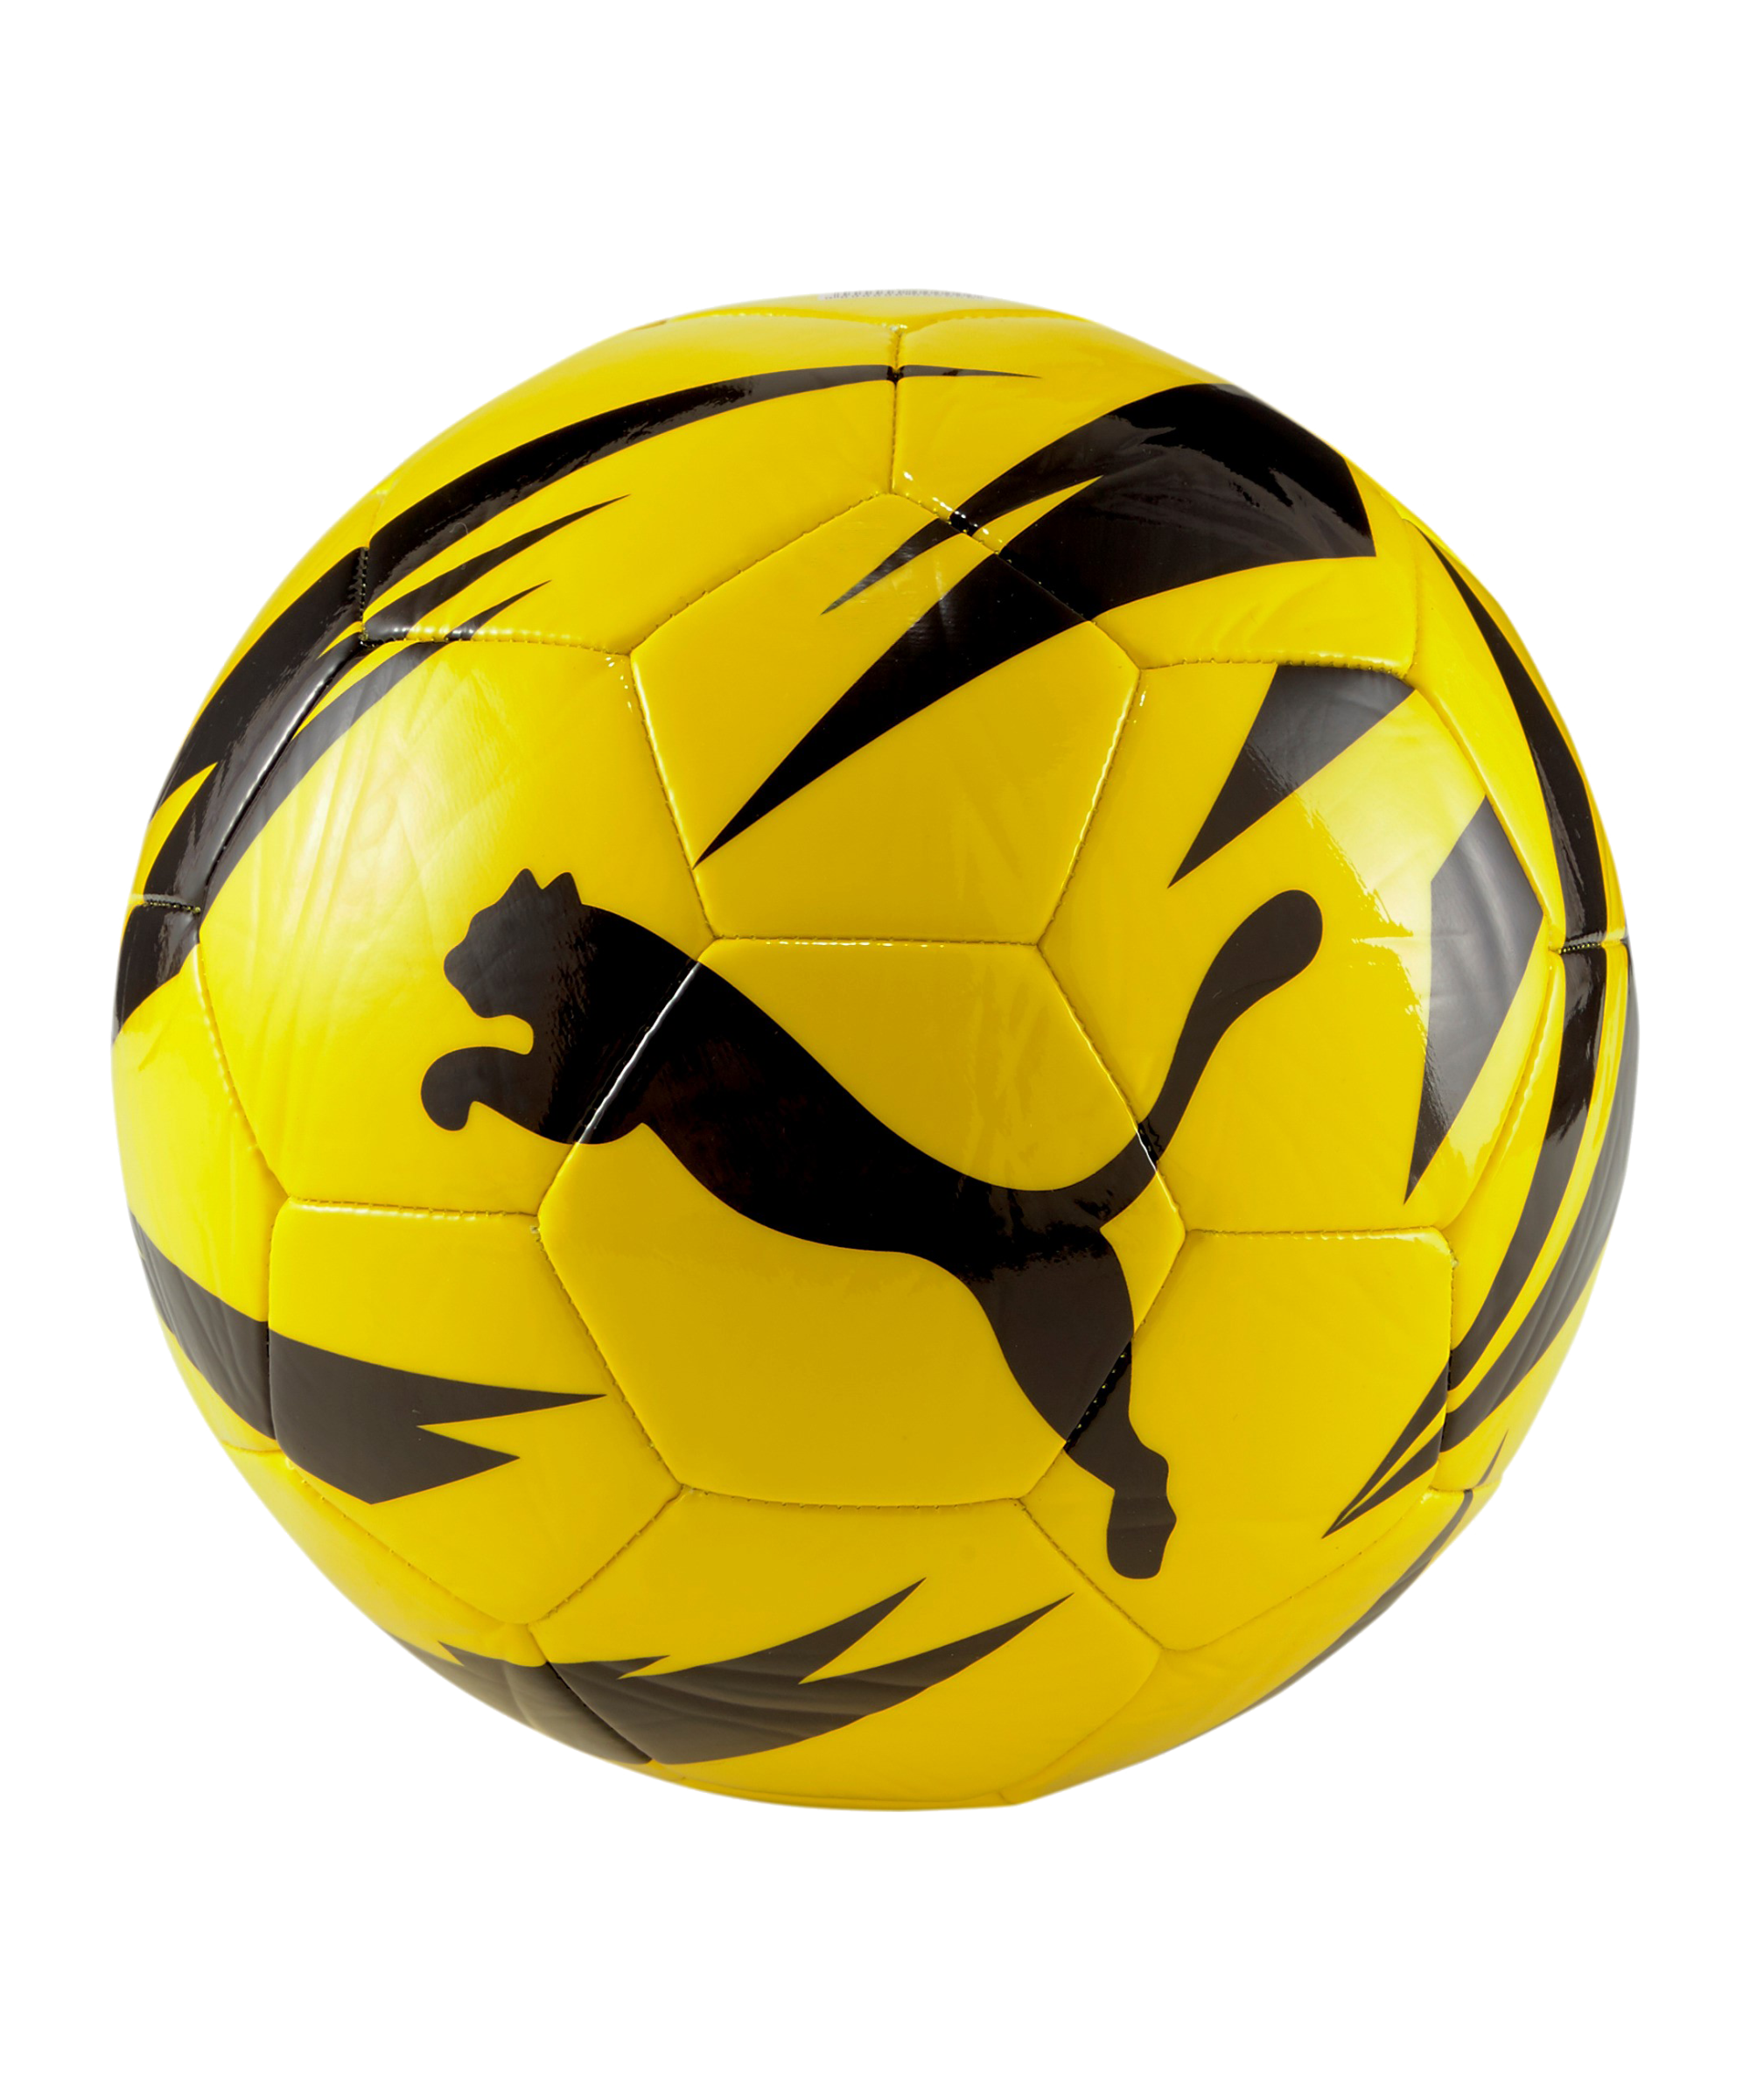 Футбольный мяч Puma BVB. Puma Borussia мяч. BVB Fan Ball Puma. Мяч футбольный Puma 083631 Yellow+Black+Silver.